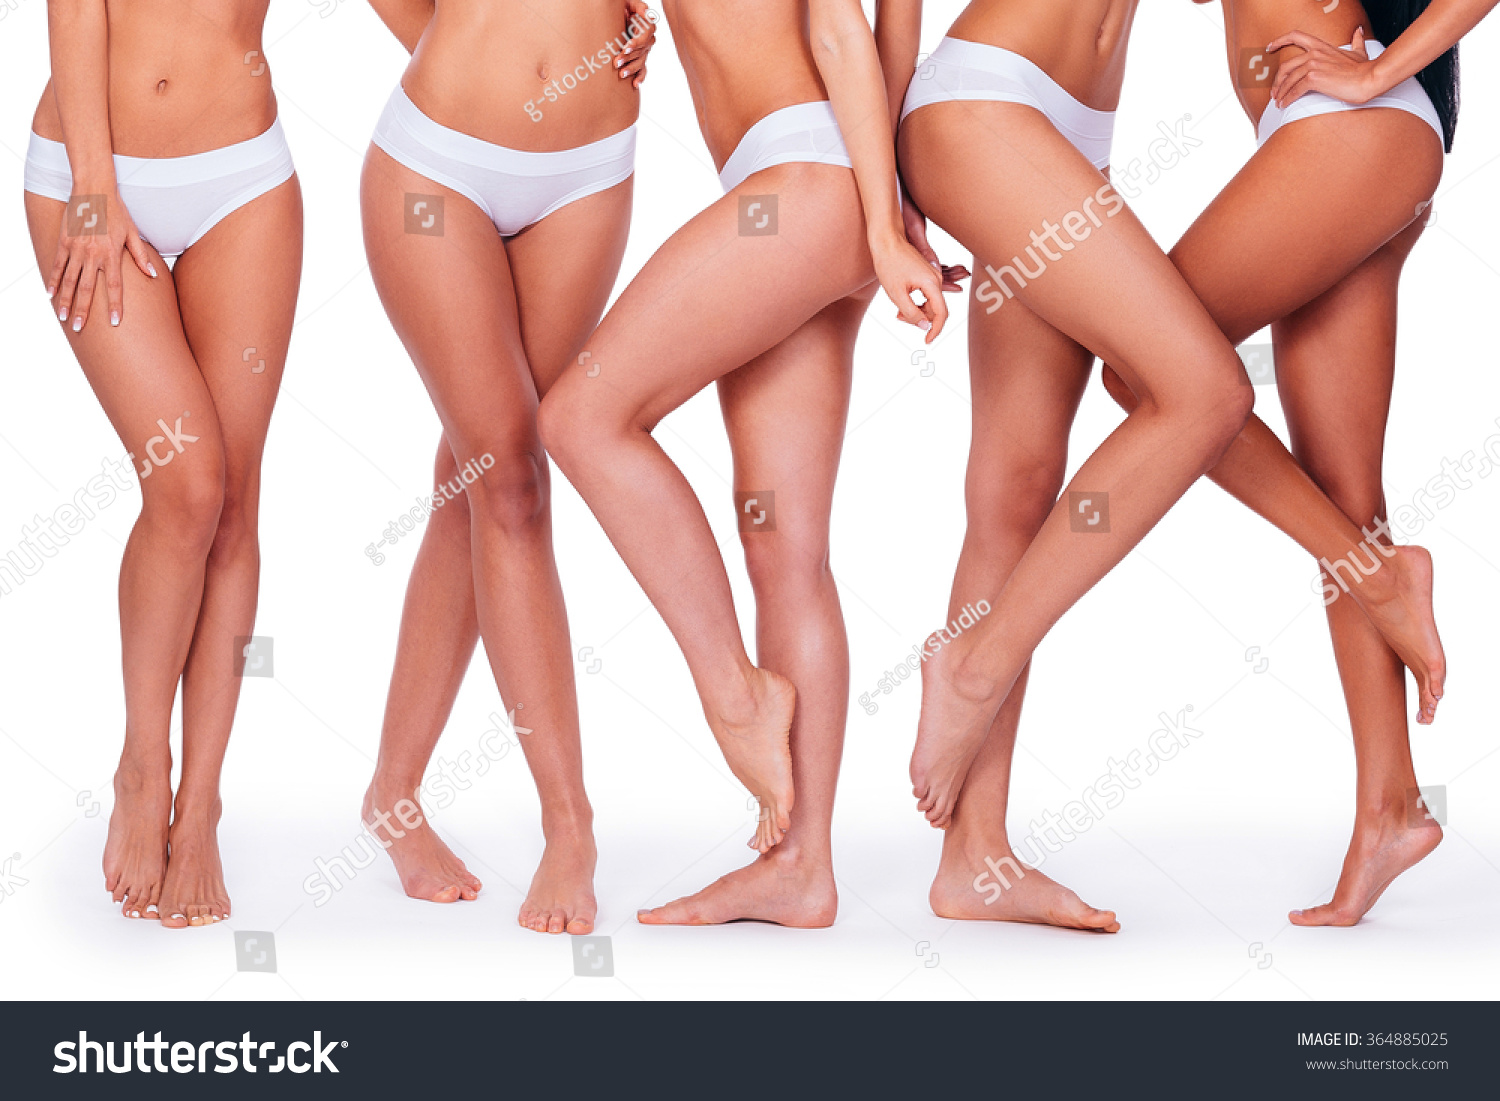 Group Of Girls In Panties